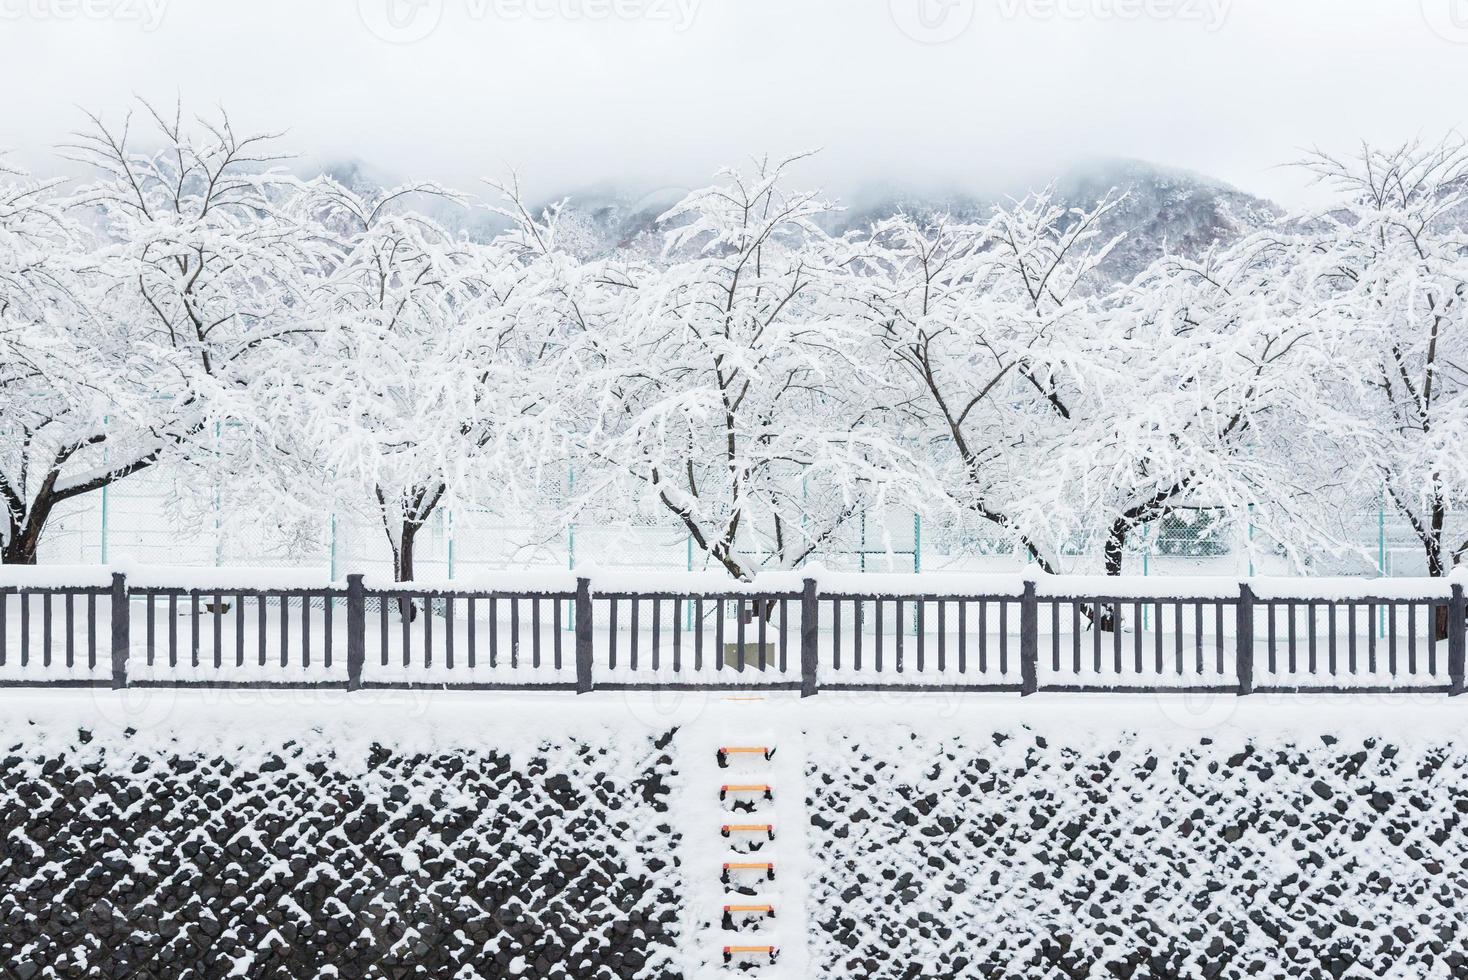 verse witte sneeuw valt in het openbare park in het winterseizoen in Kawaguchiko, Japan foto